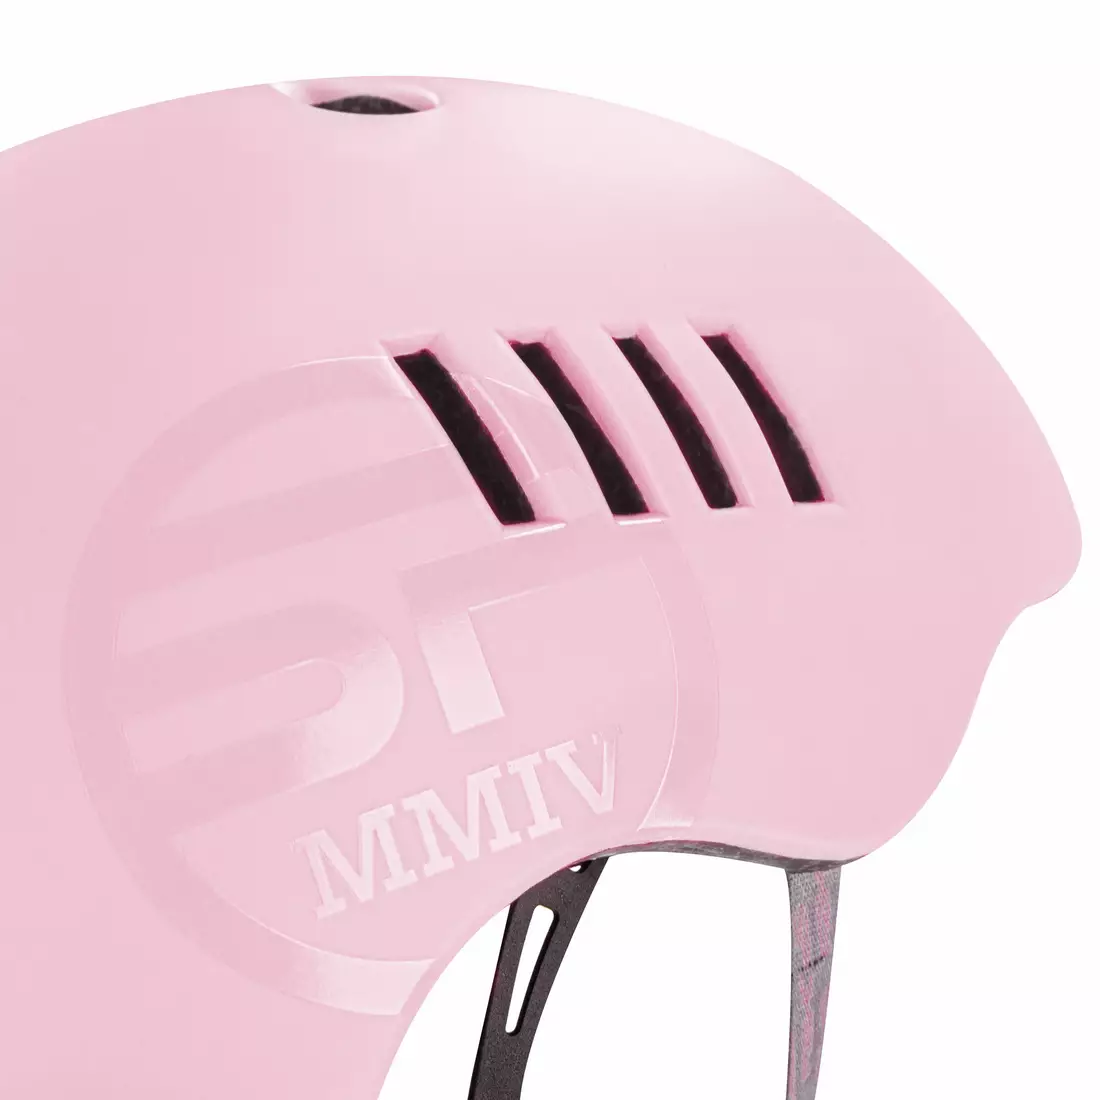 SPOKEY PUMPTRACK BMX pink bicycle helmet